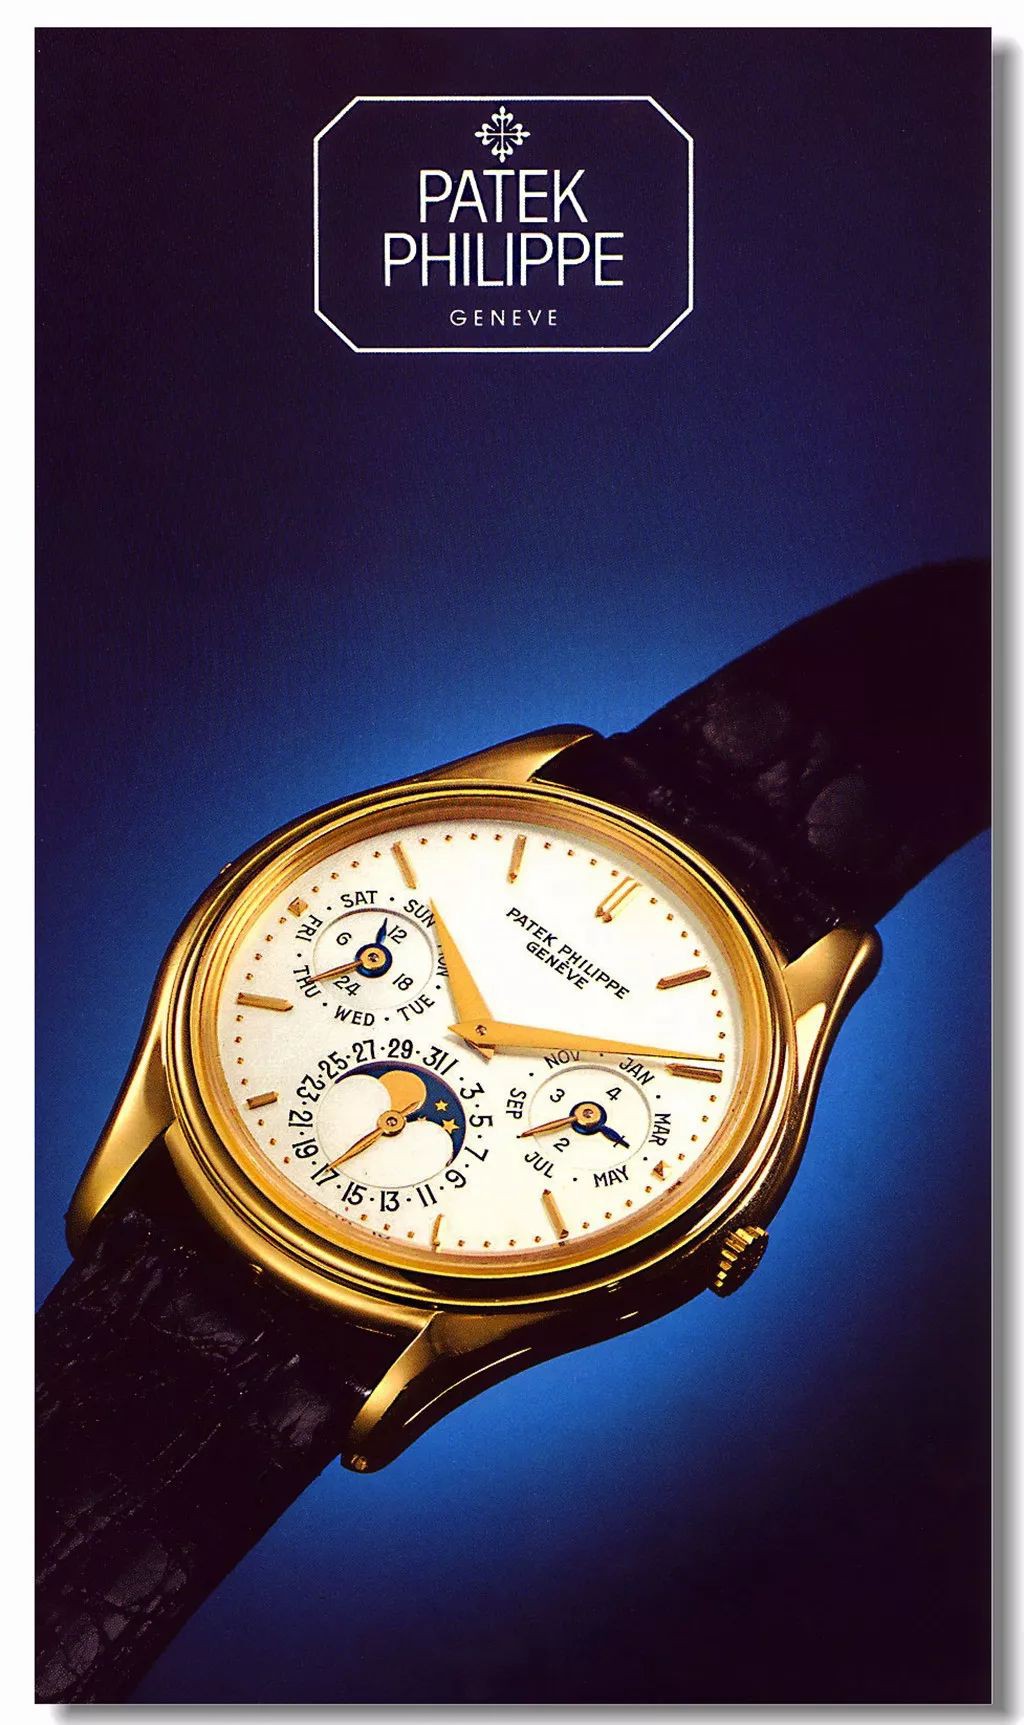 5039,无疑是普金最喜欢的百达翡丽,因为同一型号的手表,他居然白金和